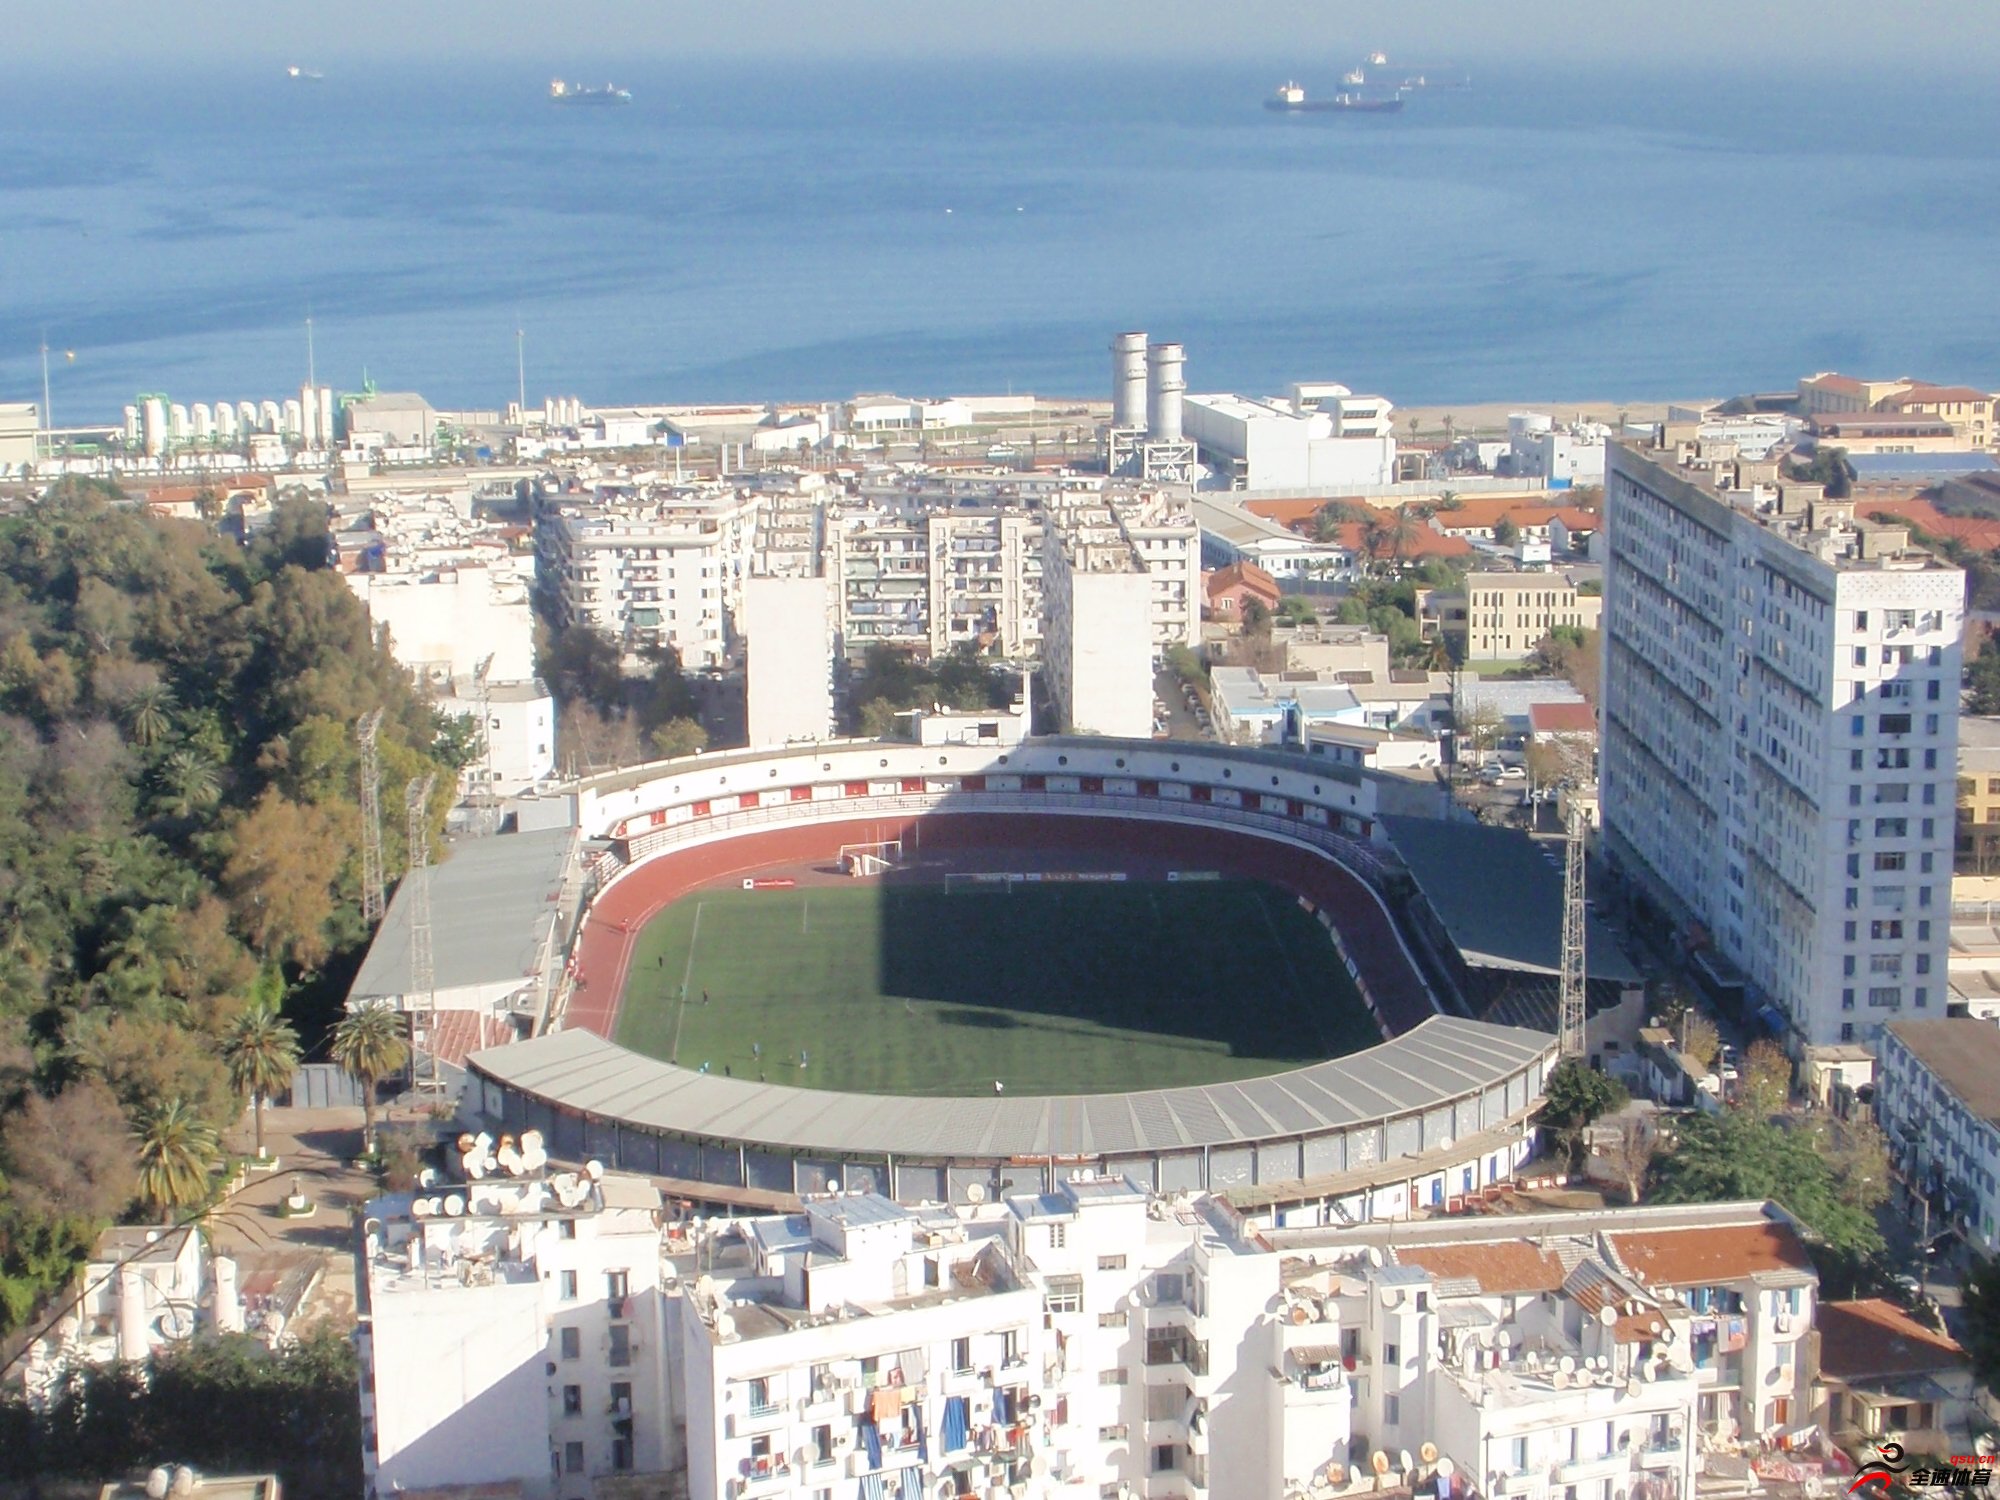 阿尔及利亚本赛季剩余国内联赛都将空场举行